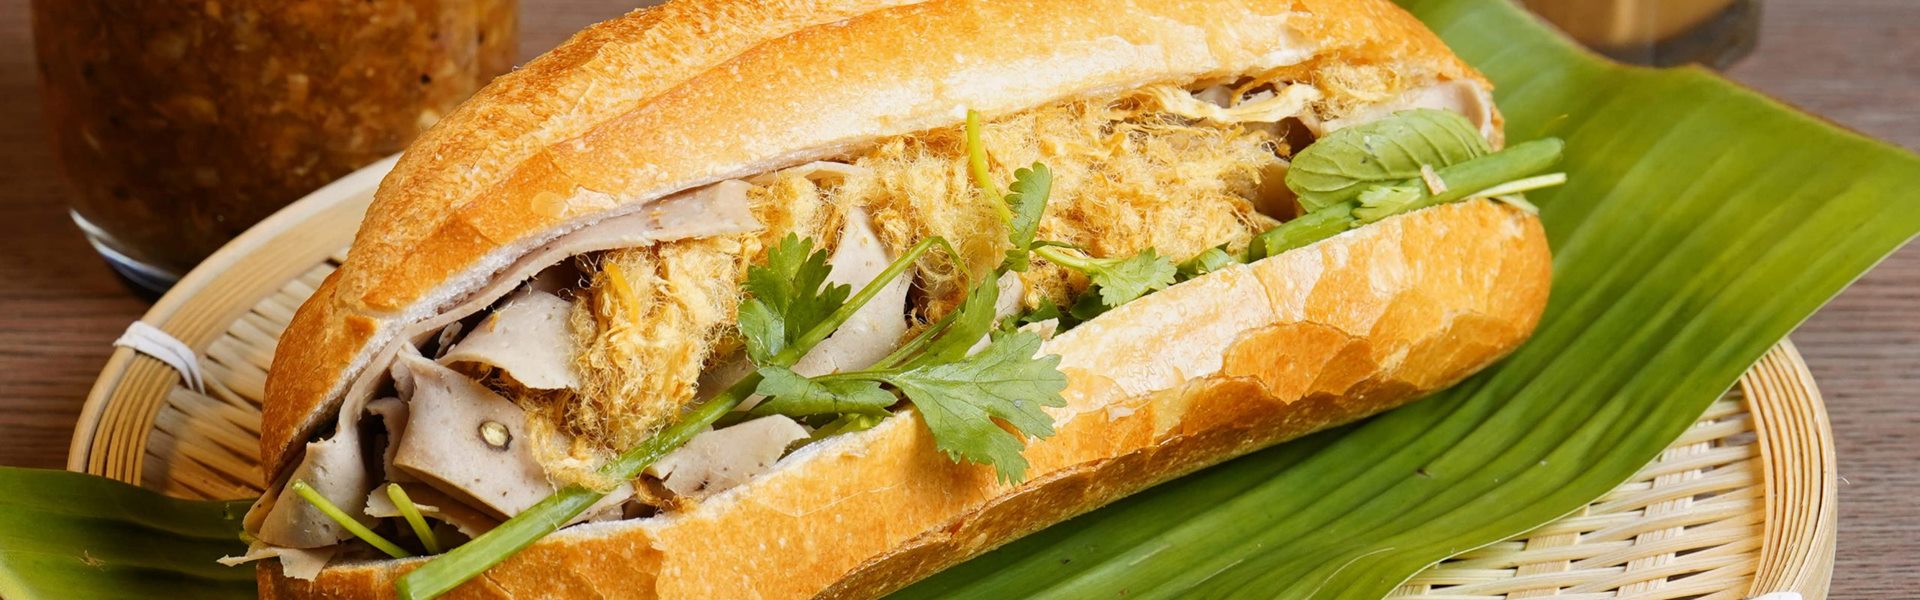 Panino Vietnamita: storia, ricetta, dove mangiare?